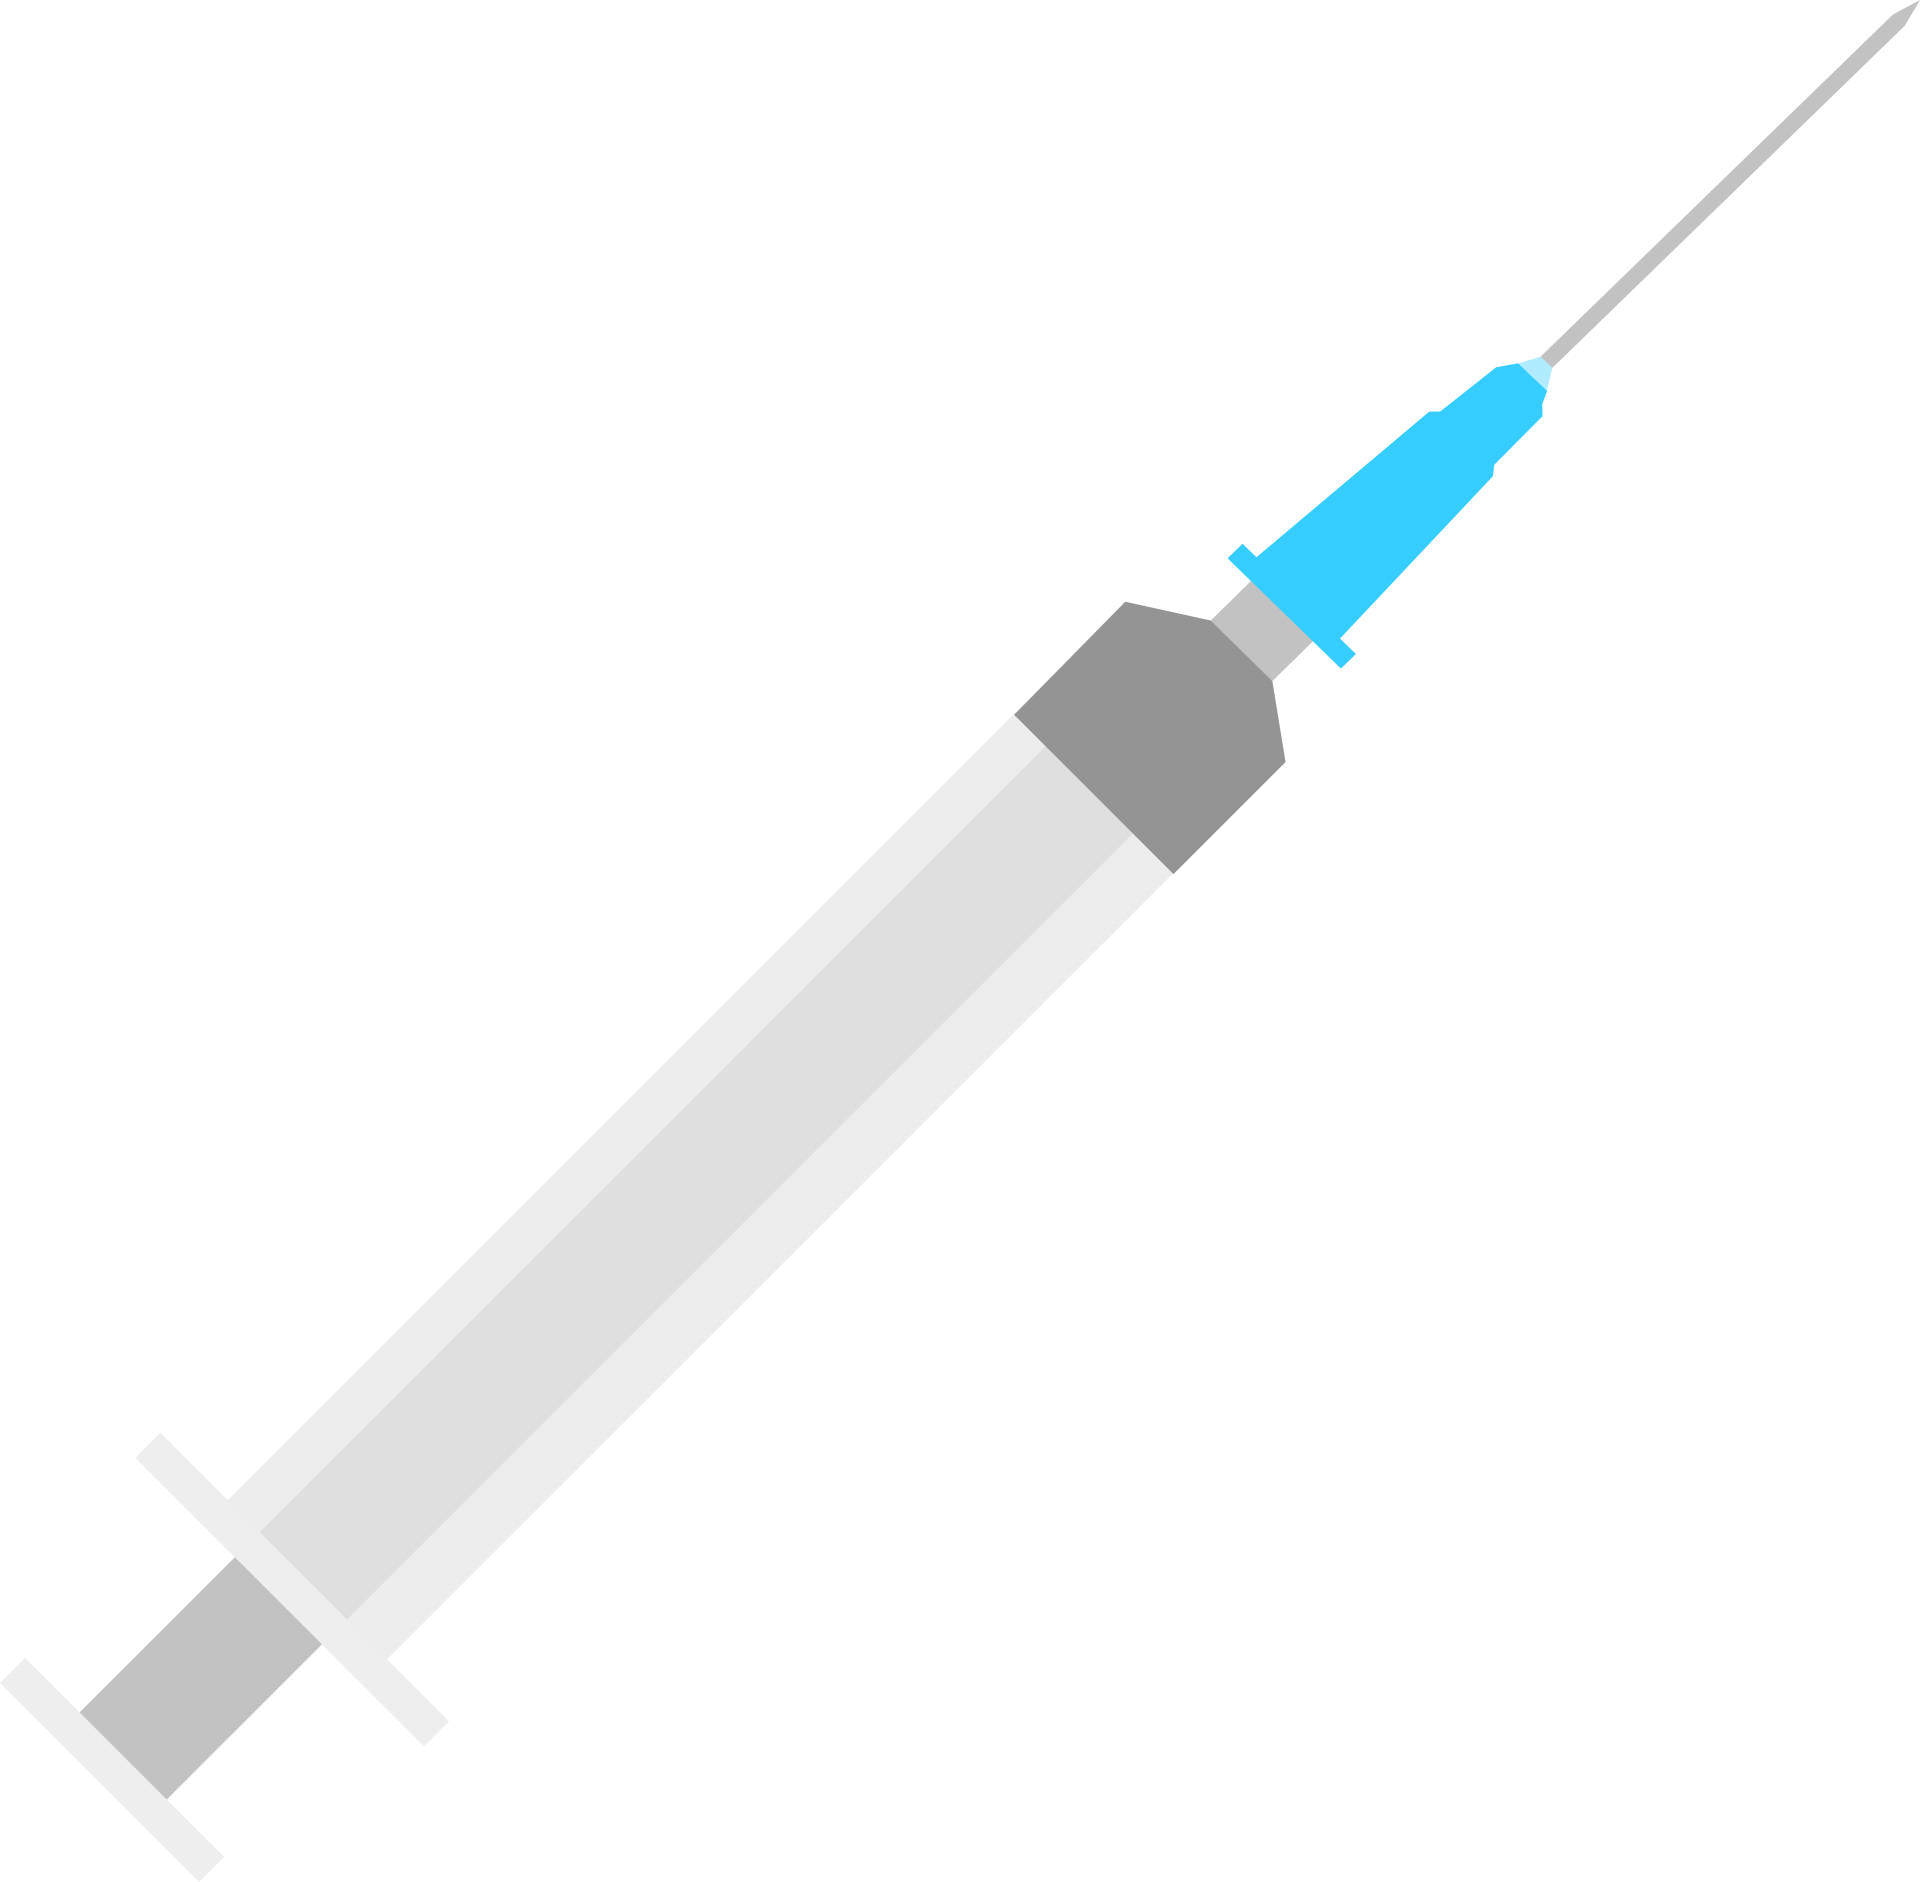 Syringe with a needle illustration on transparent background